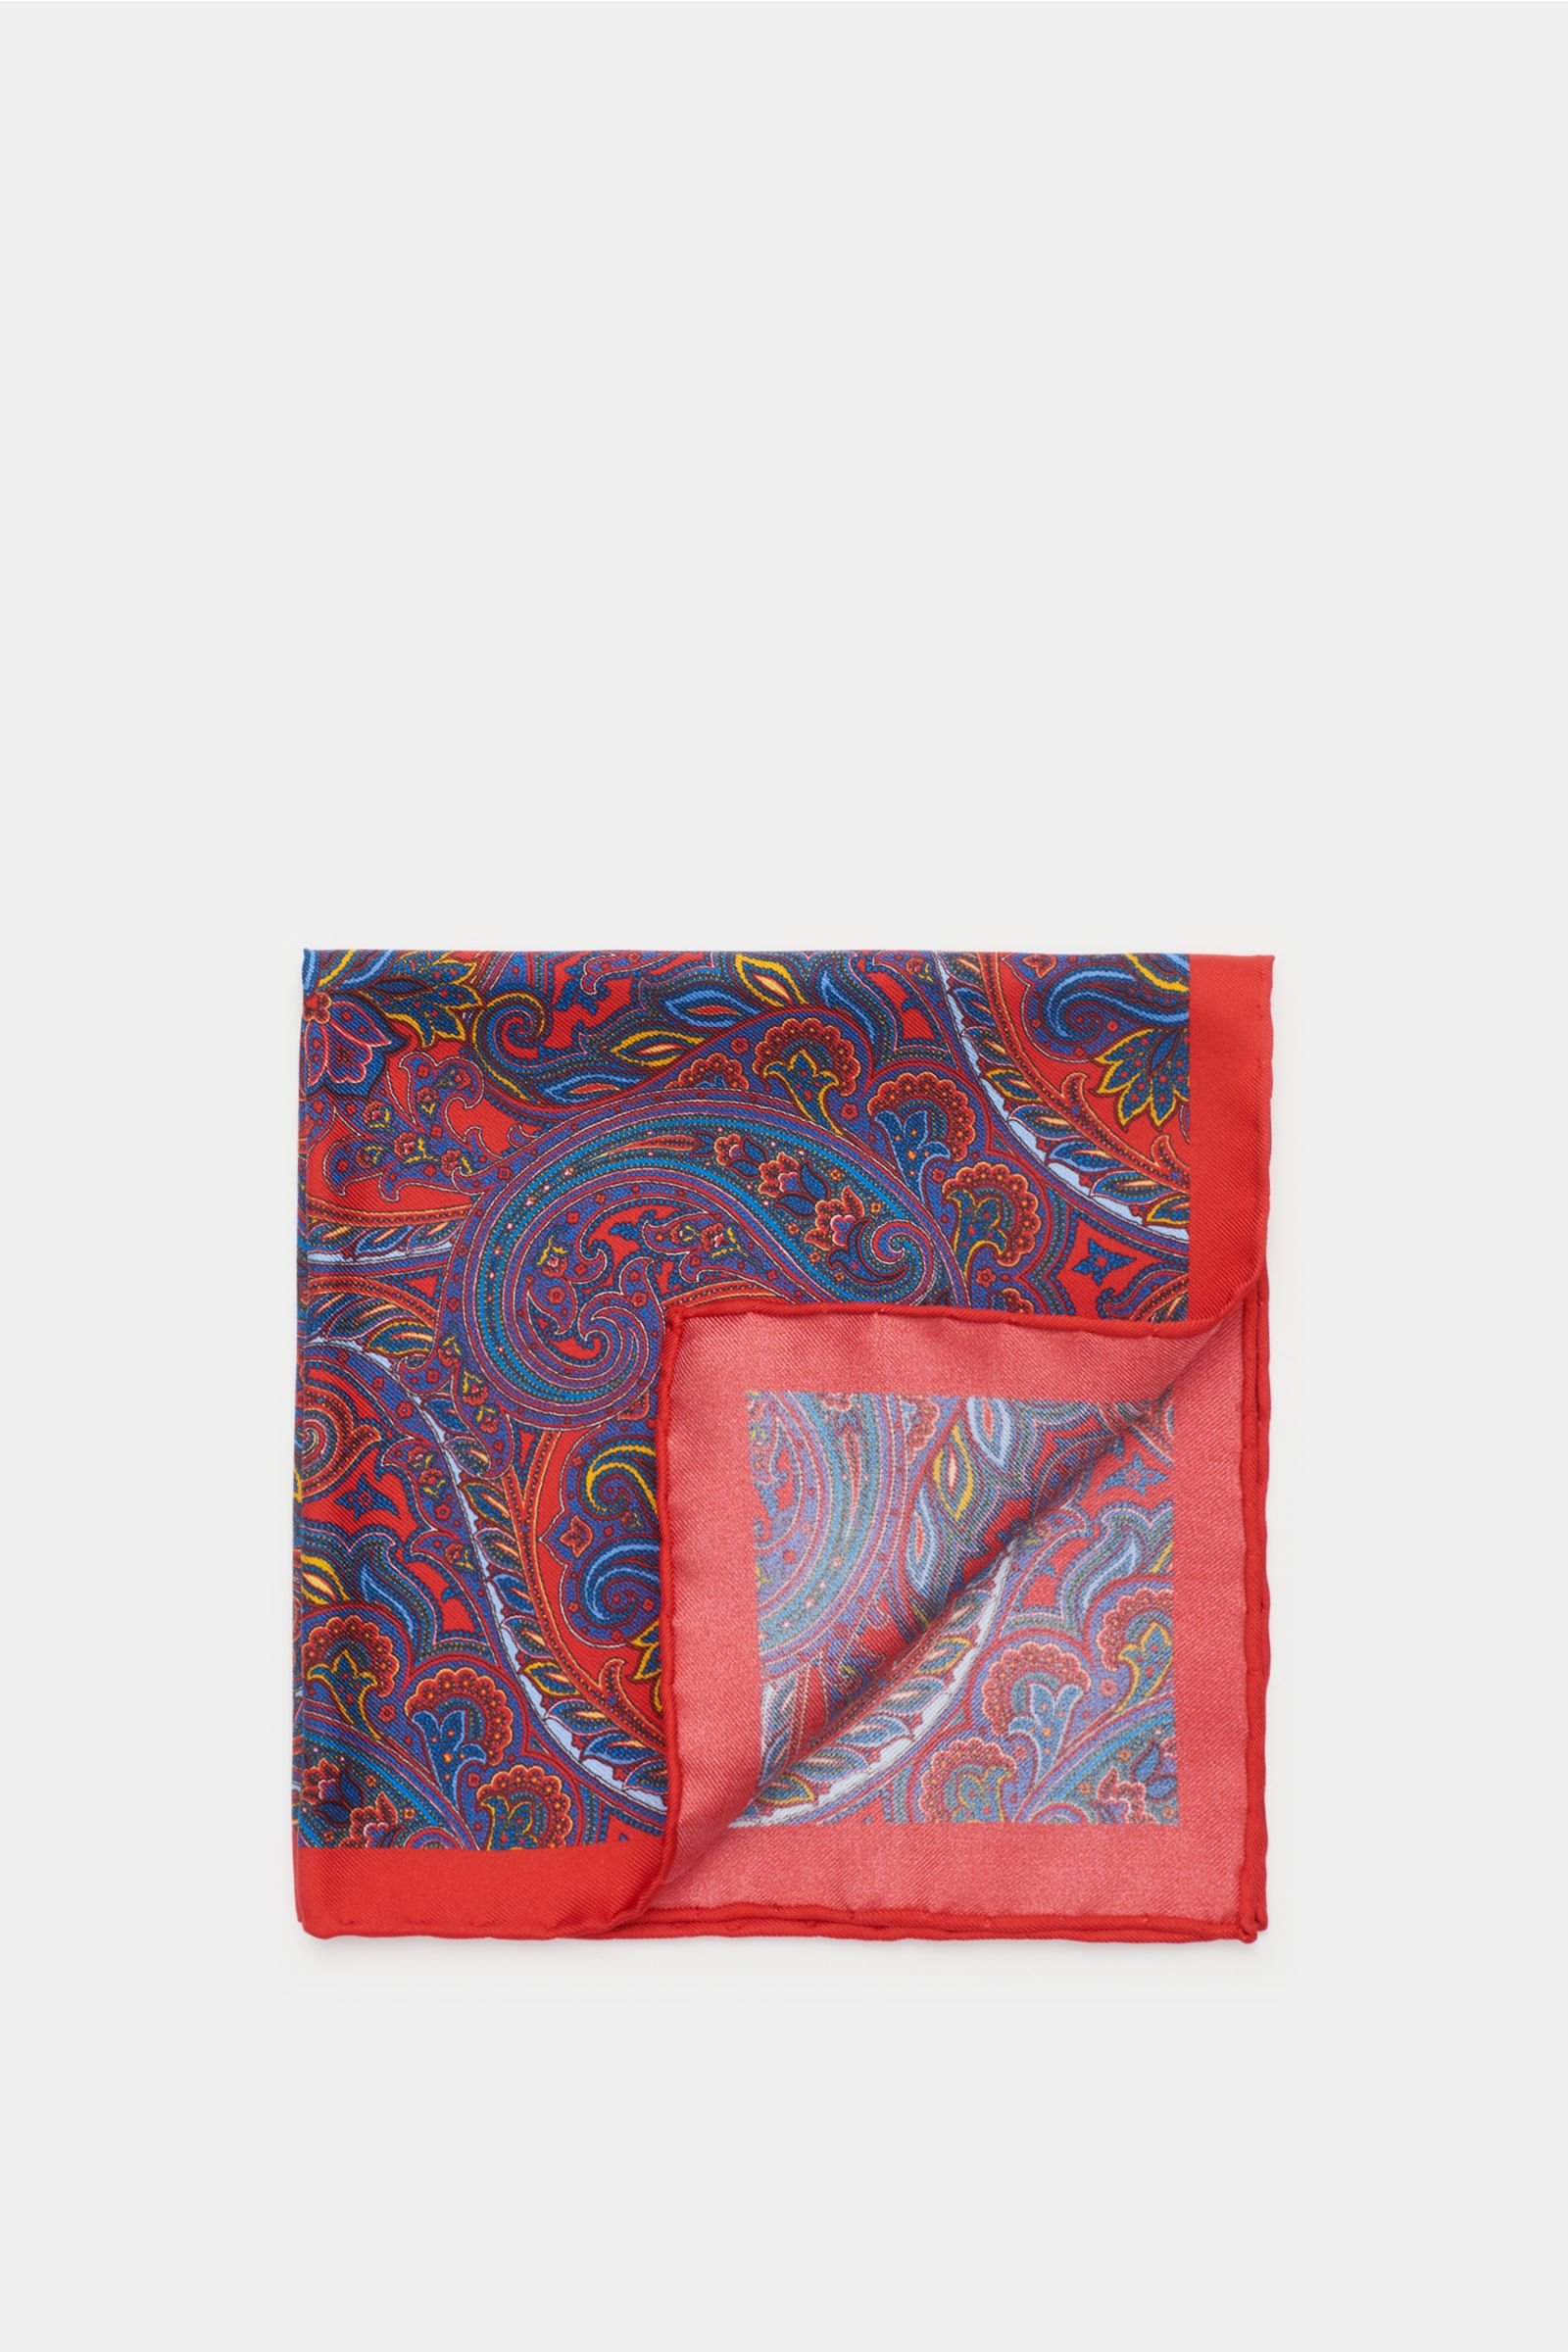 Pocket square red/dark blue patterned